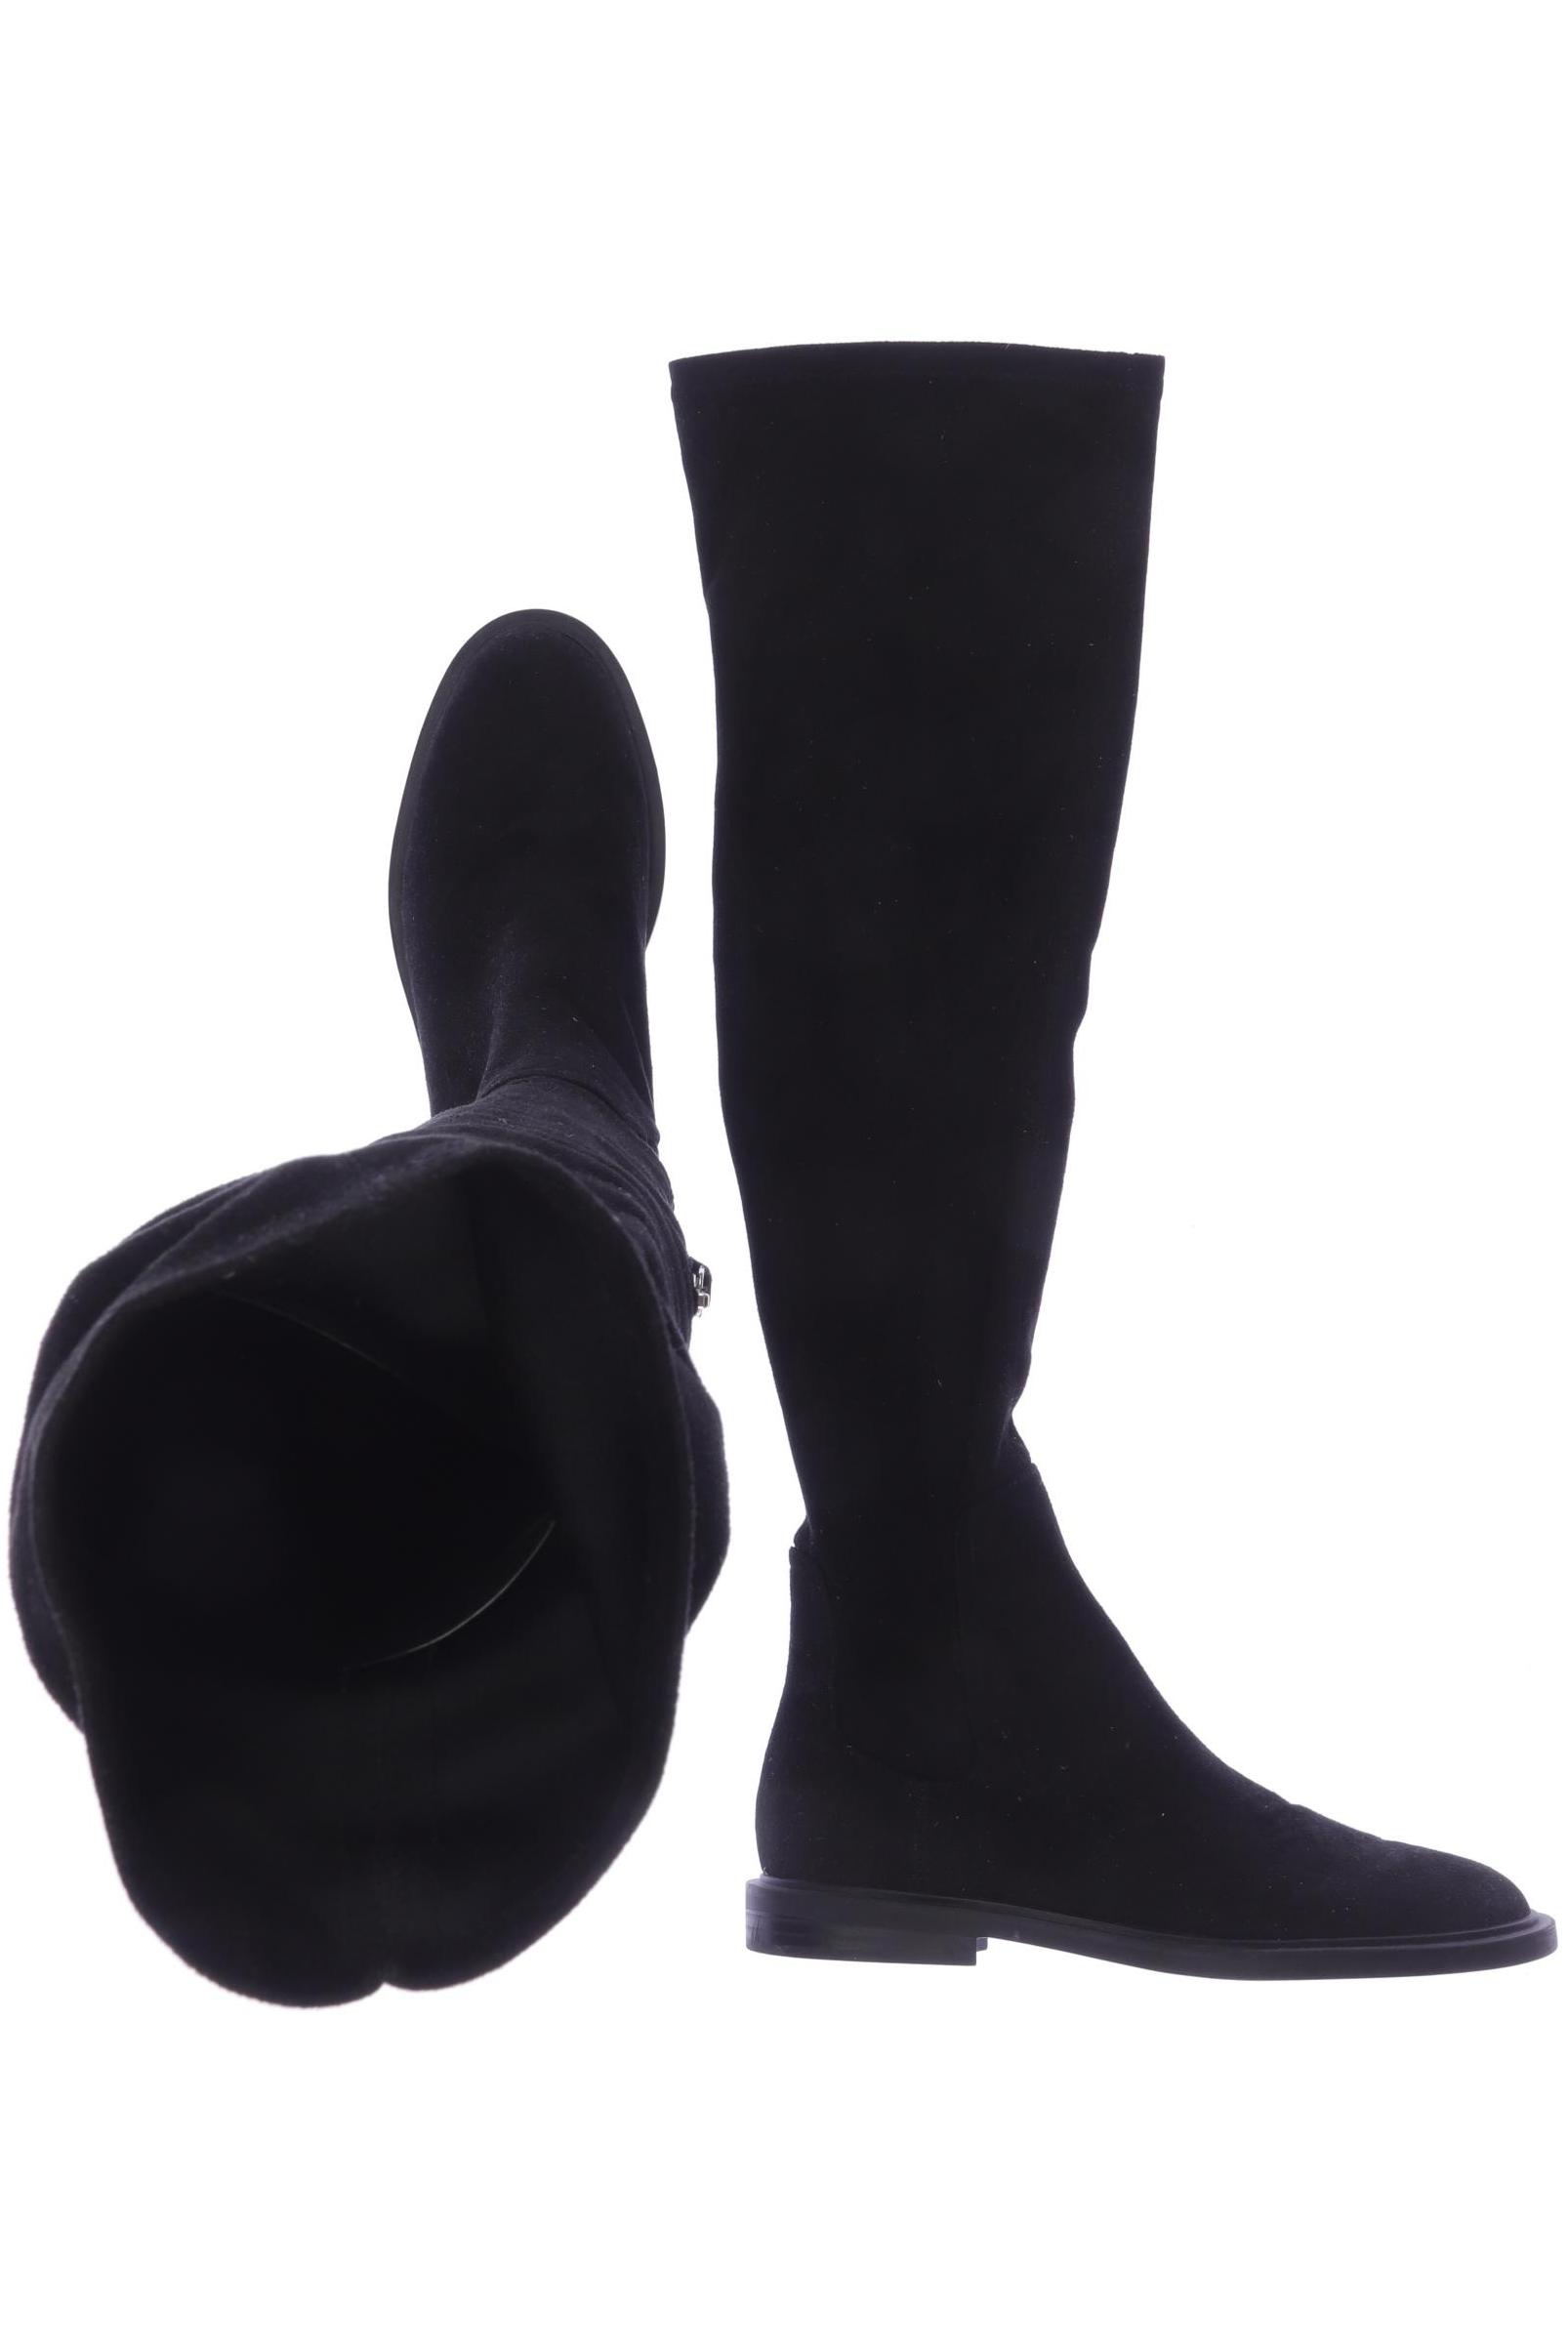 Zara Damen Stiefel, schwarz, Gr. 37 von ZARA